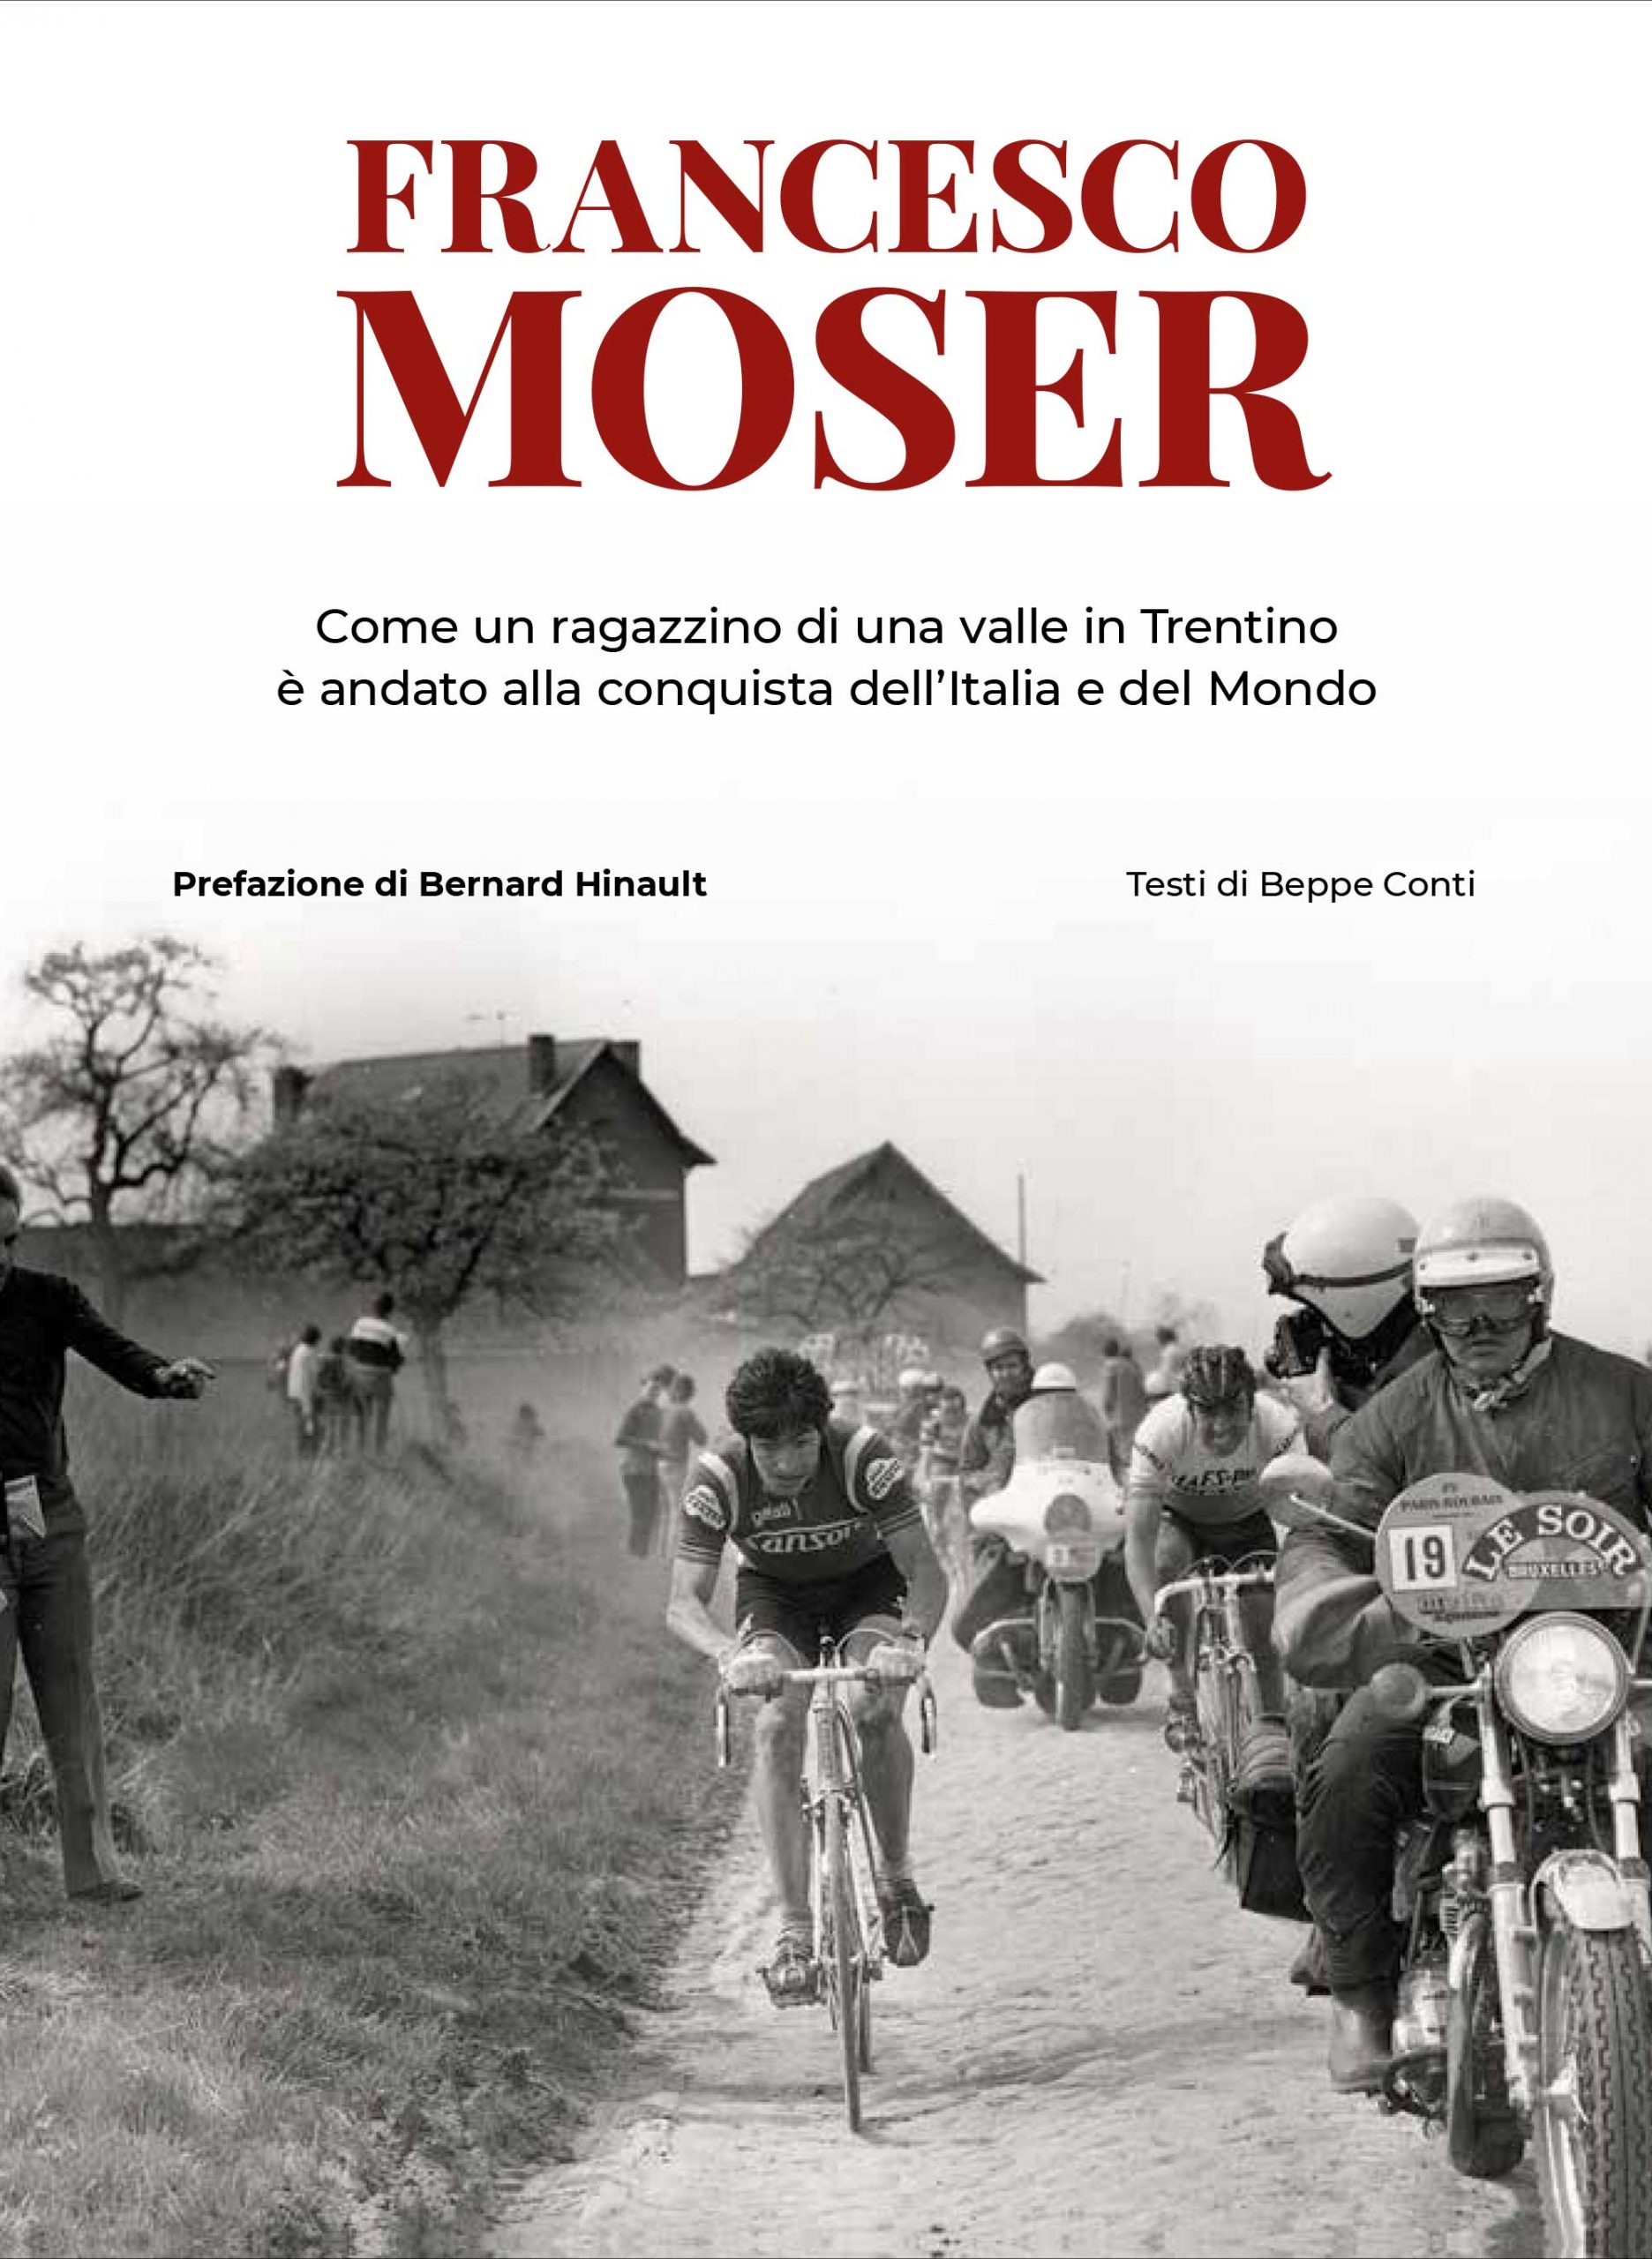 Francesco Moser ha compiuto 70 anni. Alla vita e alla storia di quest’uomo è stato dedicato il libro “Come un ragazzino di una valle in Trentino è andato alla conquista dell’Italia e del Mondo”